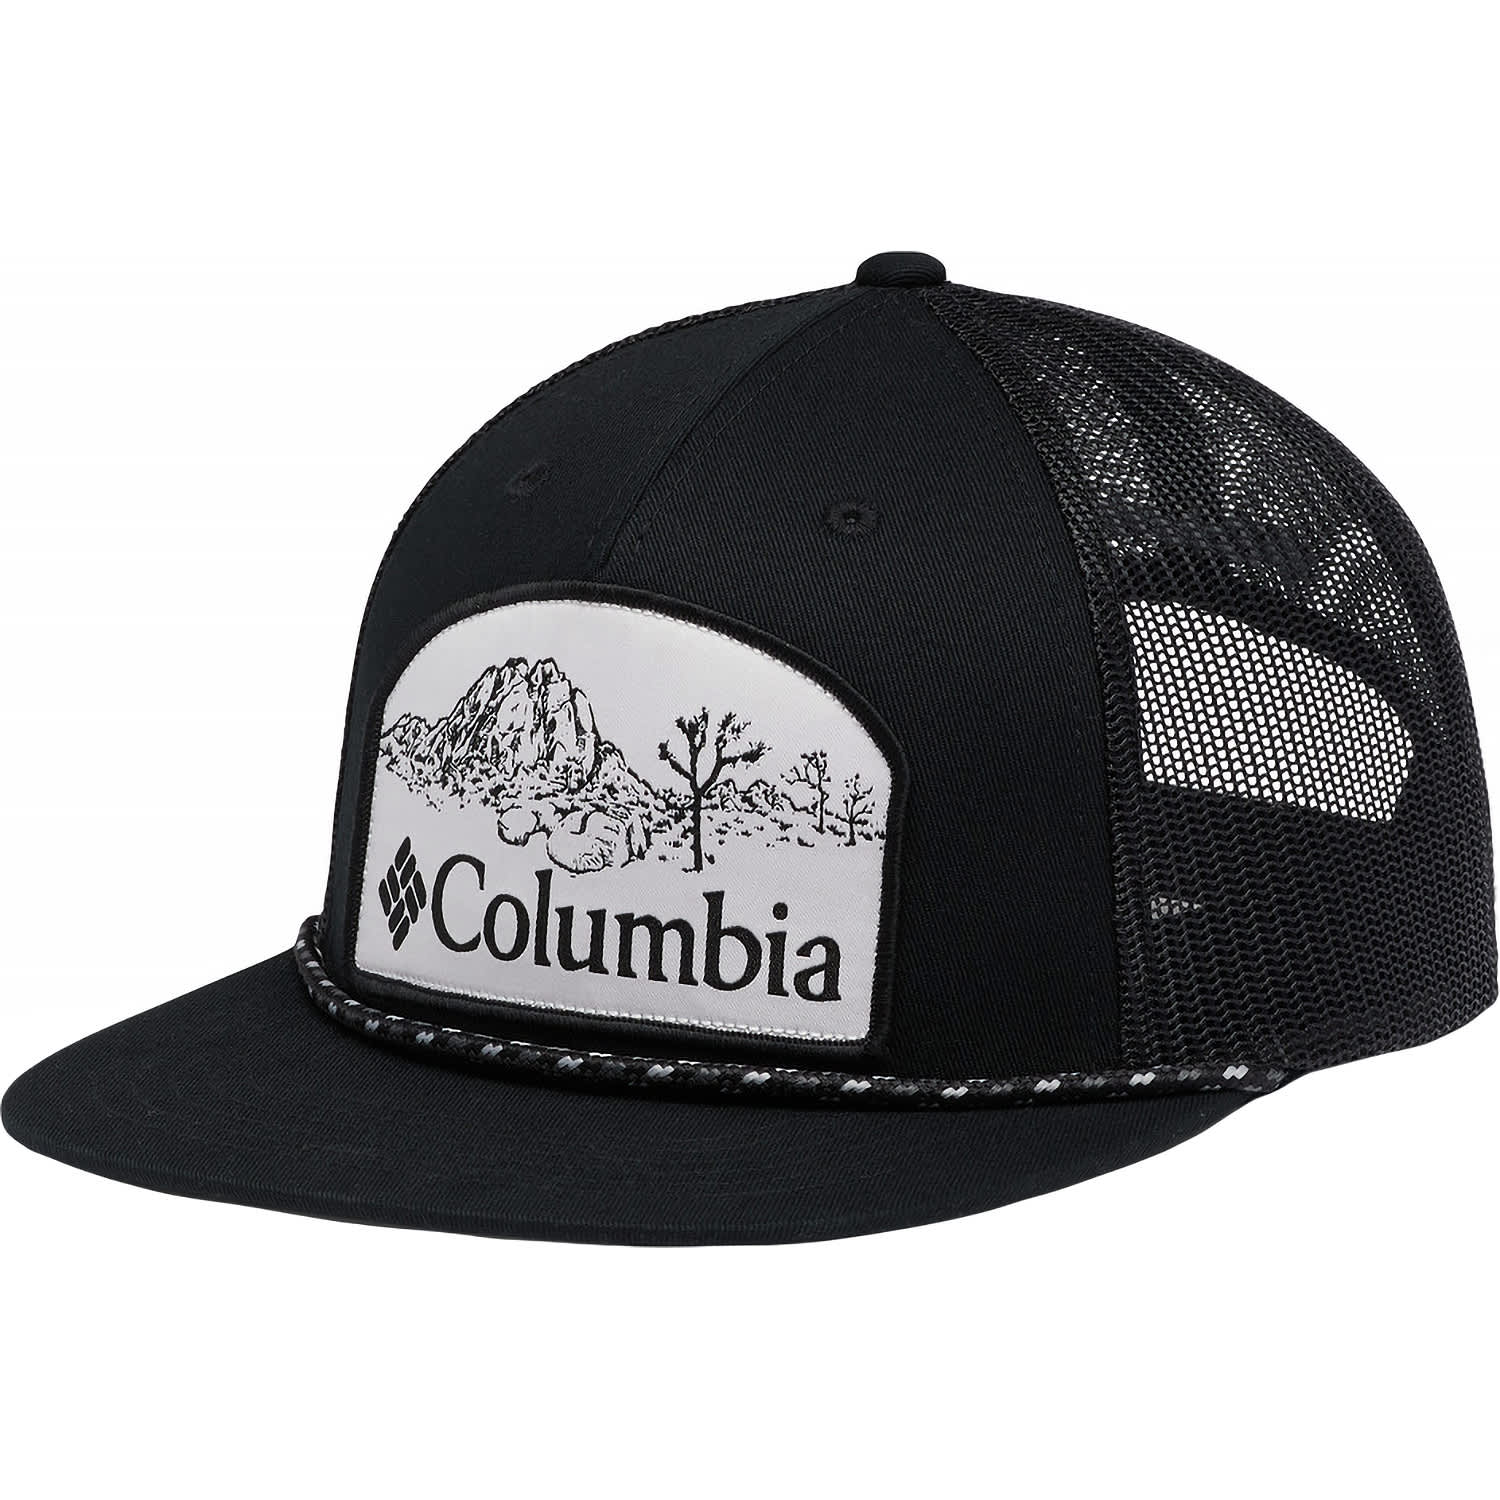 Columbia® Men’s Flat Brim Snapback Cap